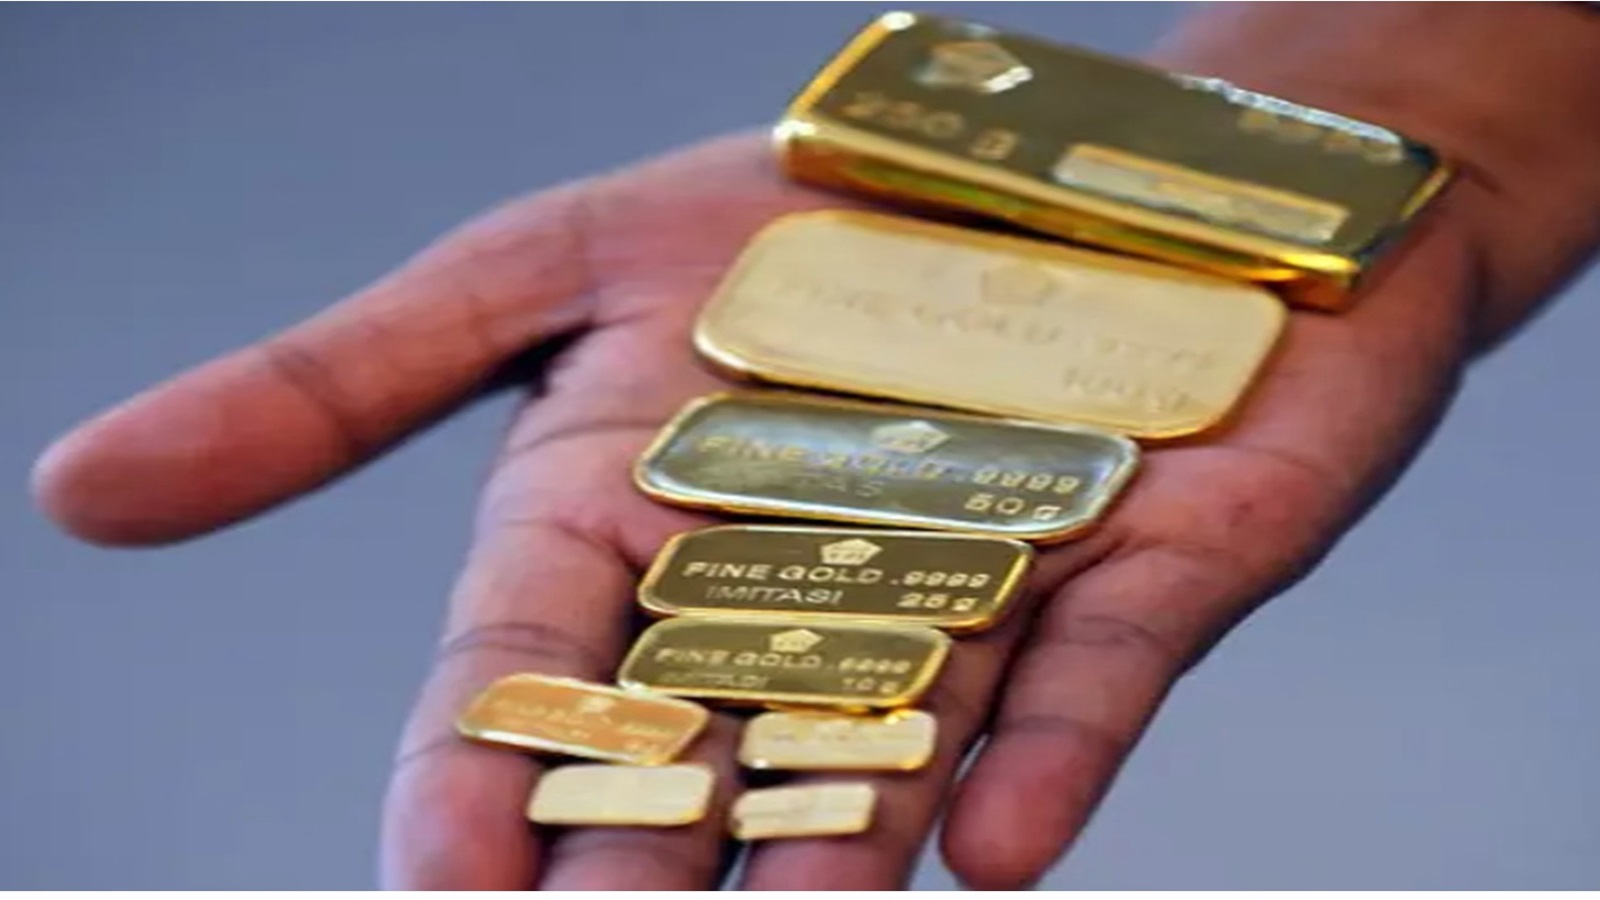 "حمّى" الذهب: أيهما الأجدى الأونصة المحلية أم السويسرية؟